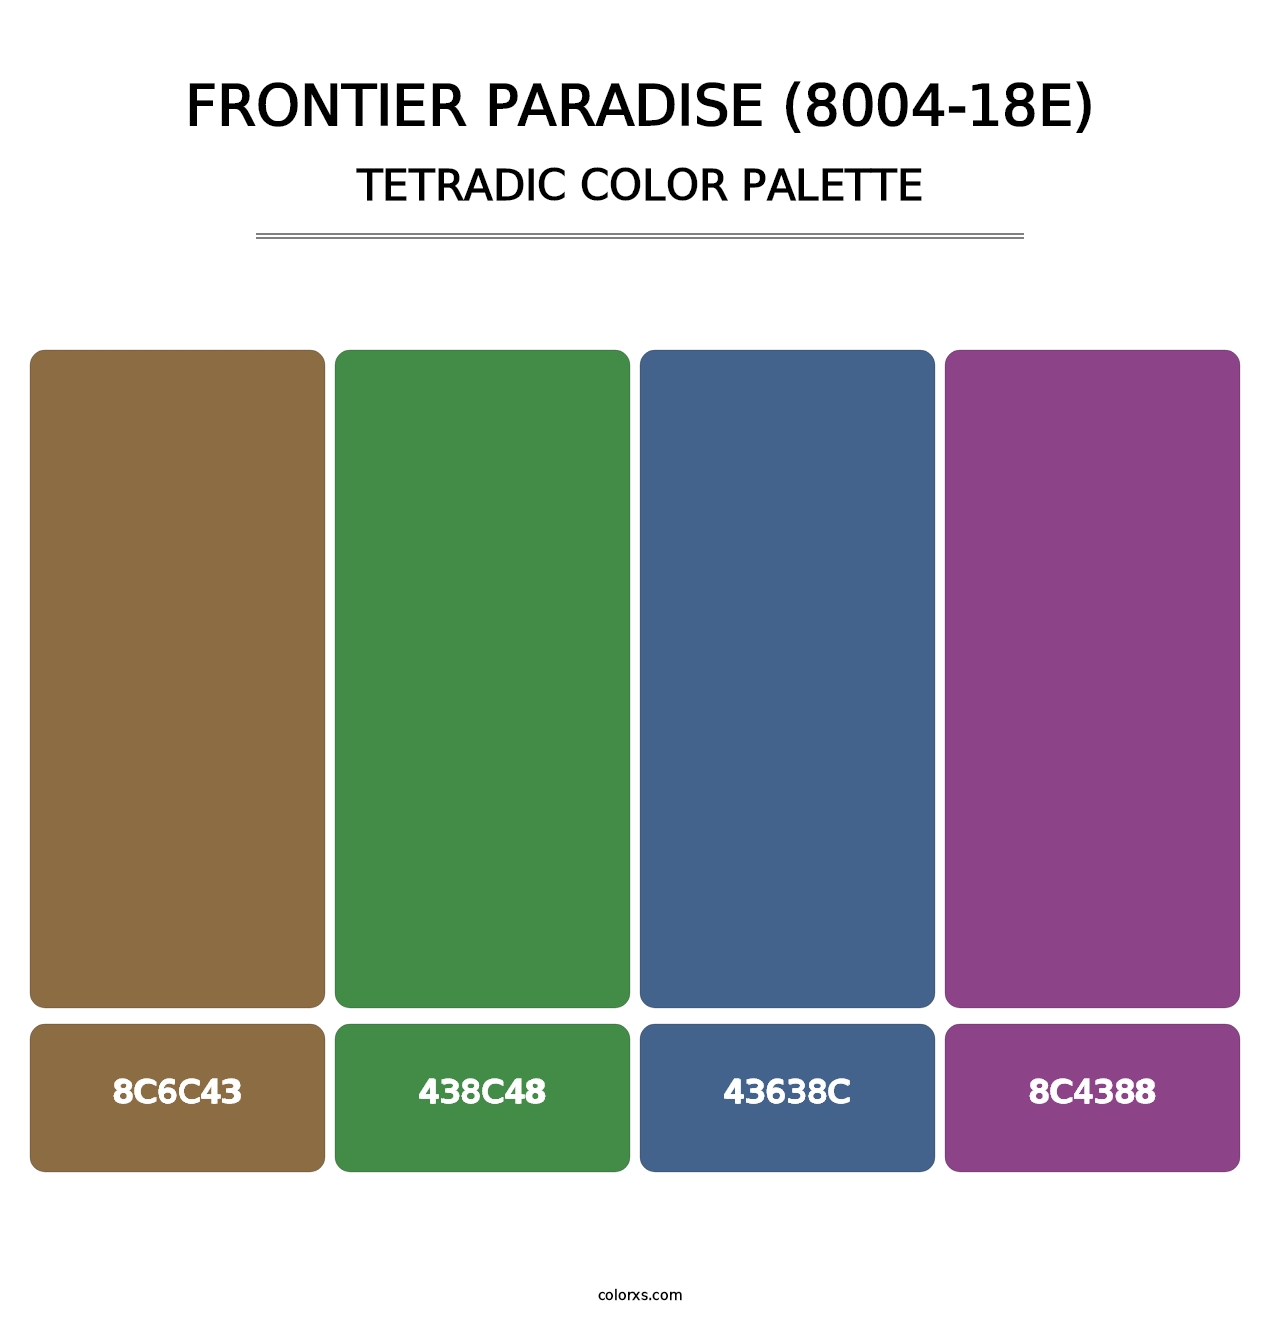 Frontier Paradise (8004-18E) - Tetradic Color Palette